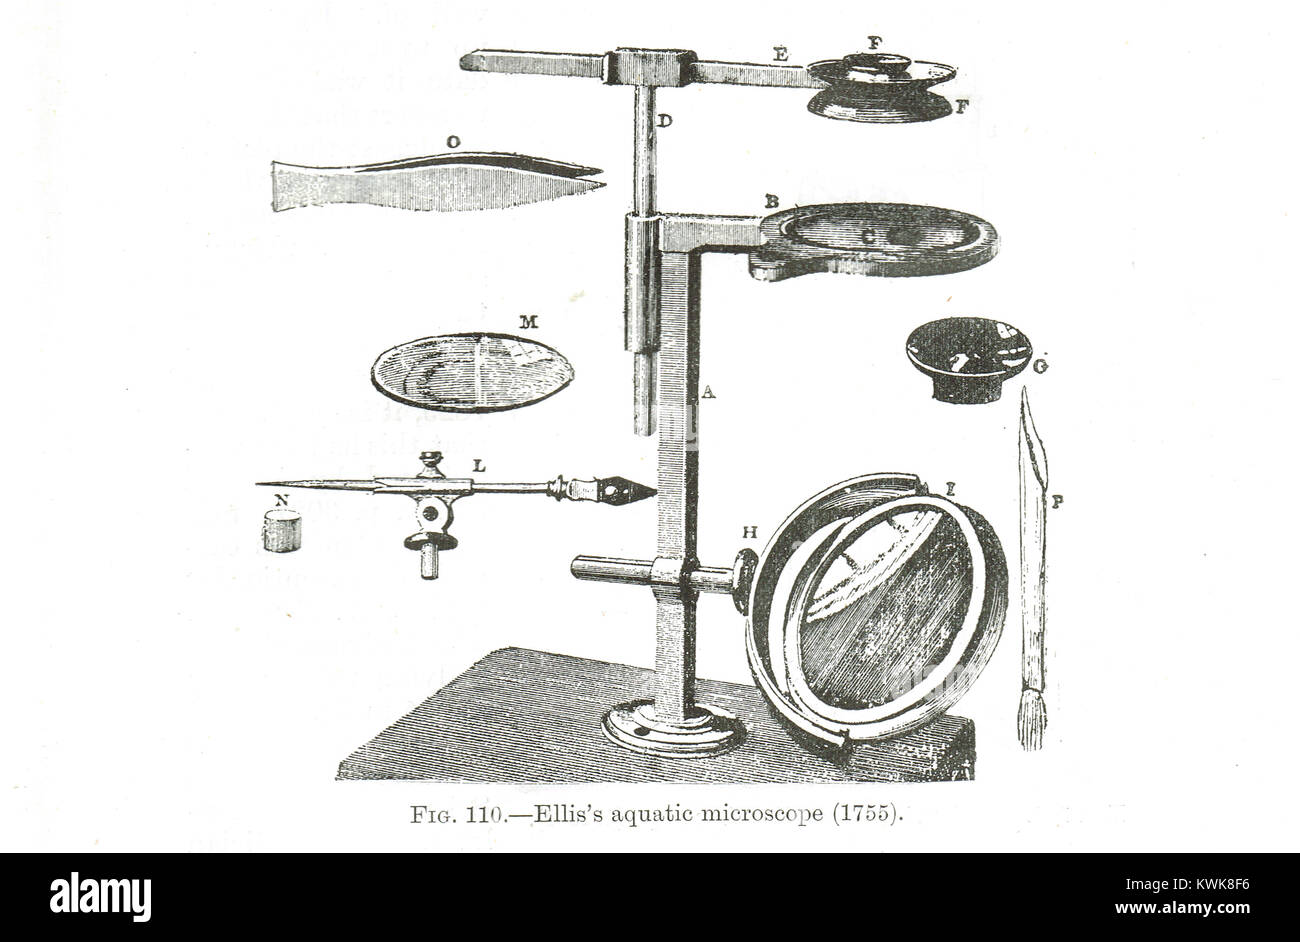 John Ellis del microscopio acquatico, 1755 Foto Stock